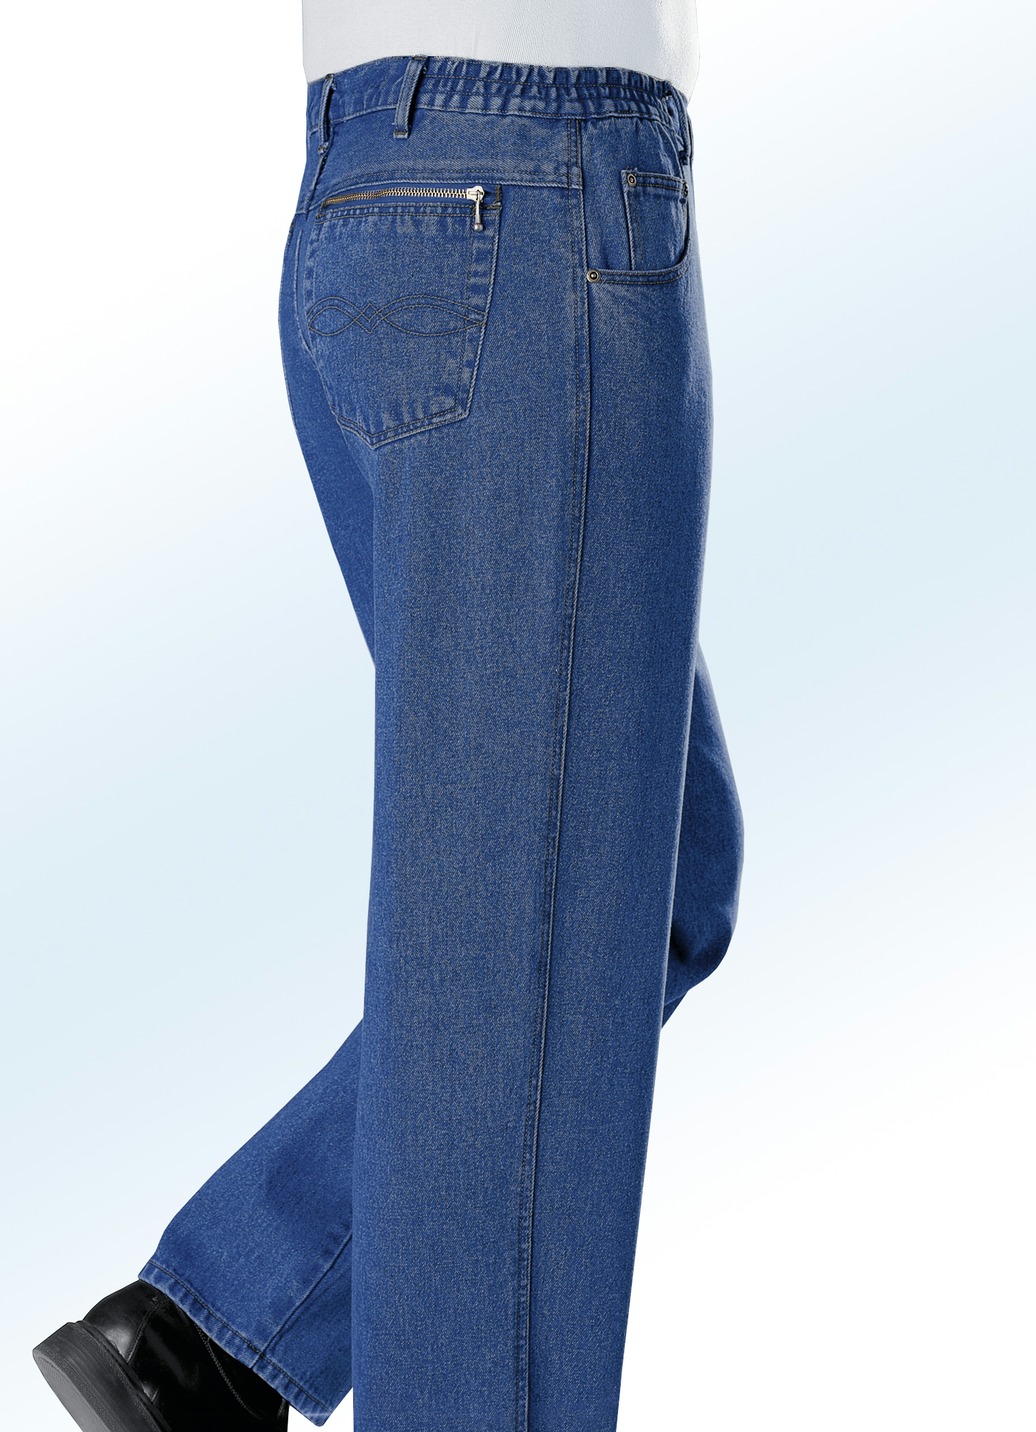 Jeans mit Dehnbundeinsätzen in 3 Farben, Jeansblau, Größe 29 von BADER